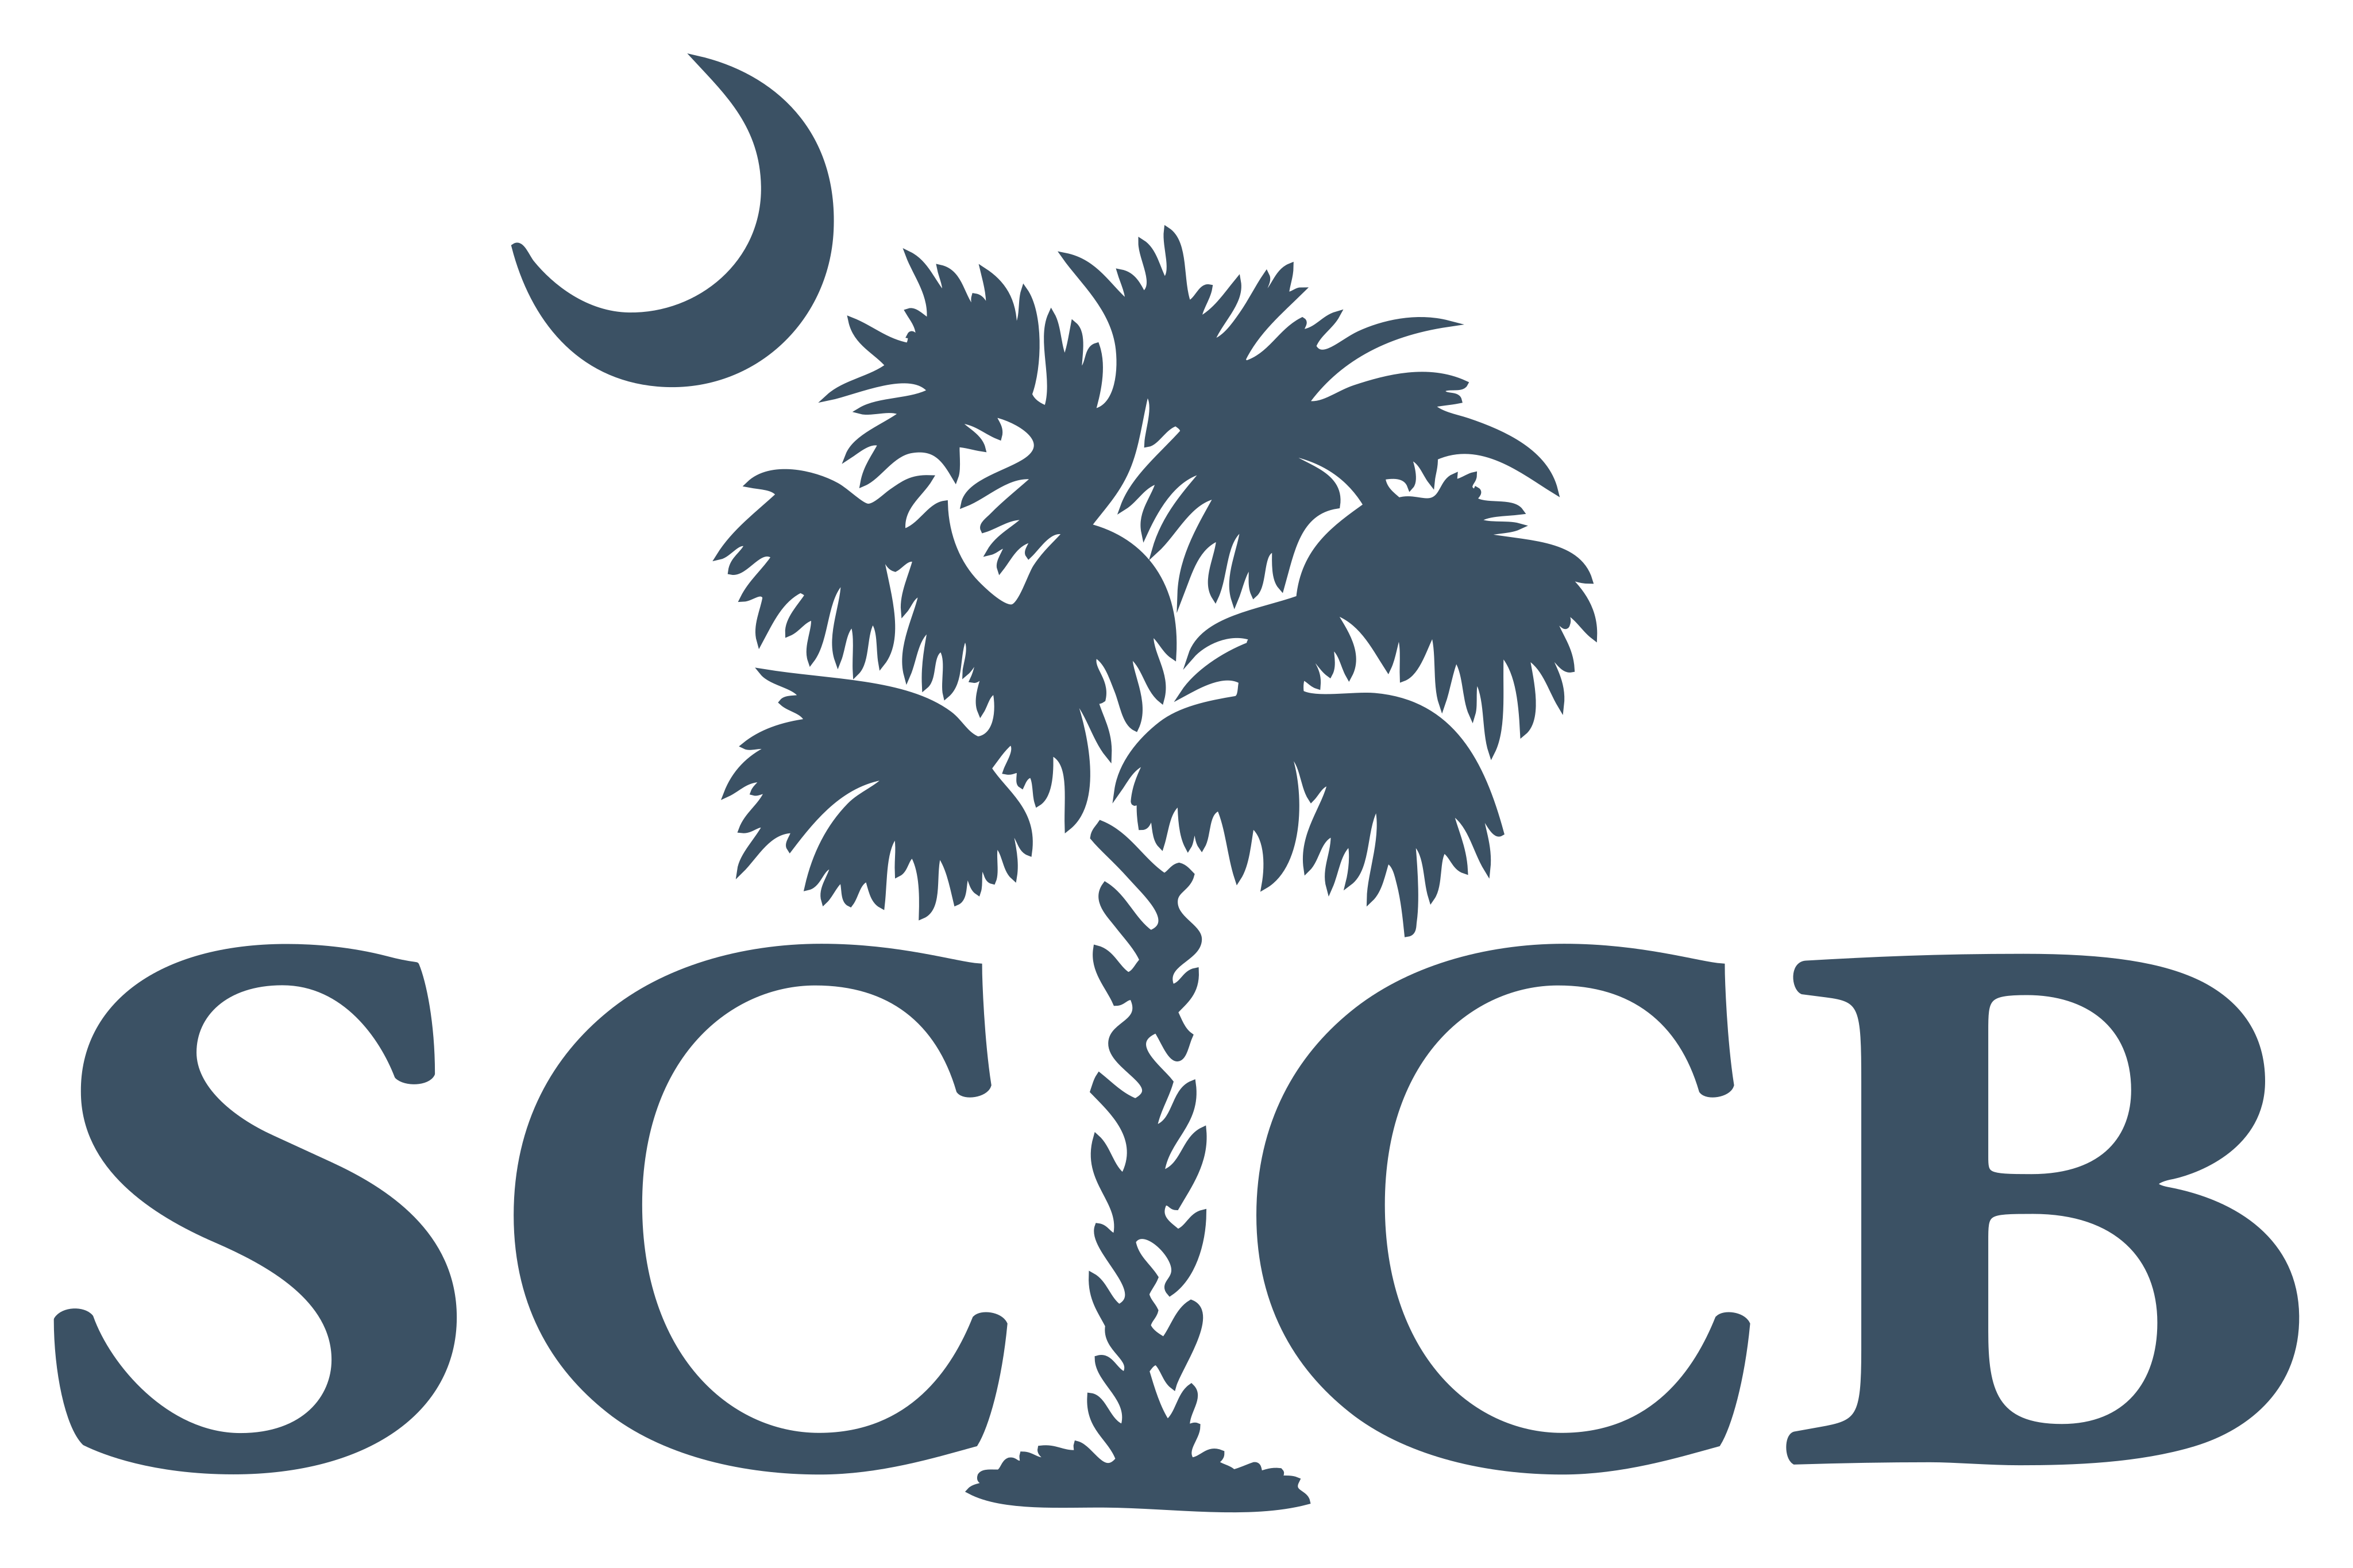 sccb logo